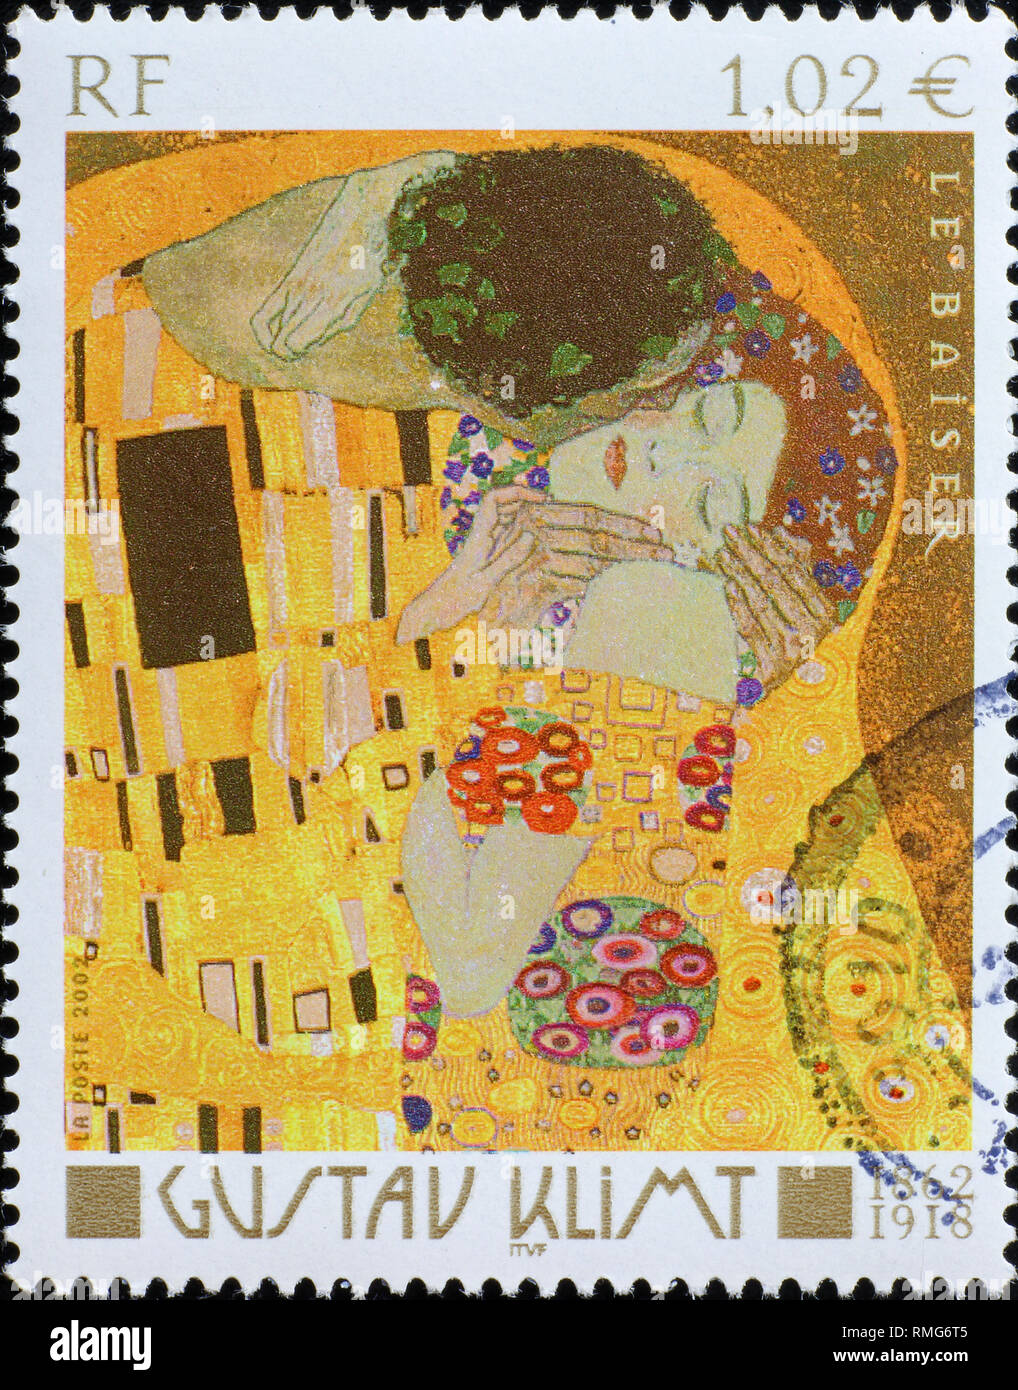 Détail du baiser par Klimt sur timbre français Banque D'Images